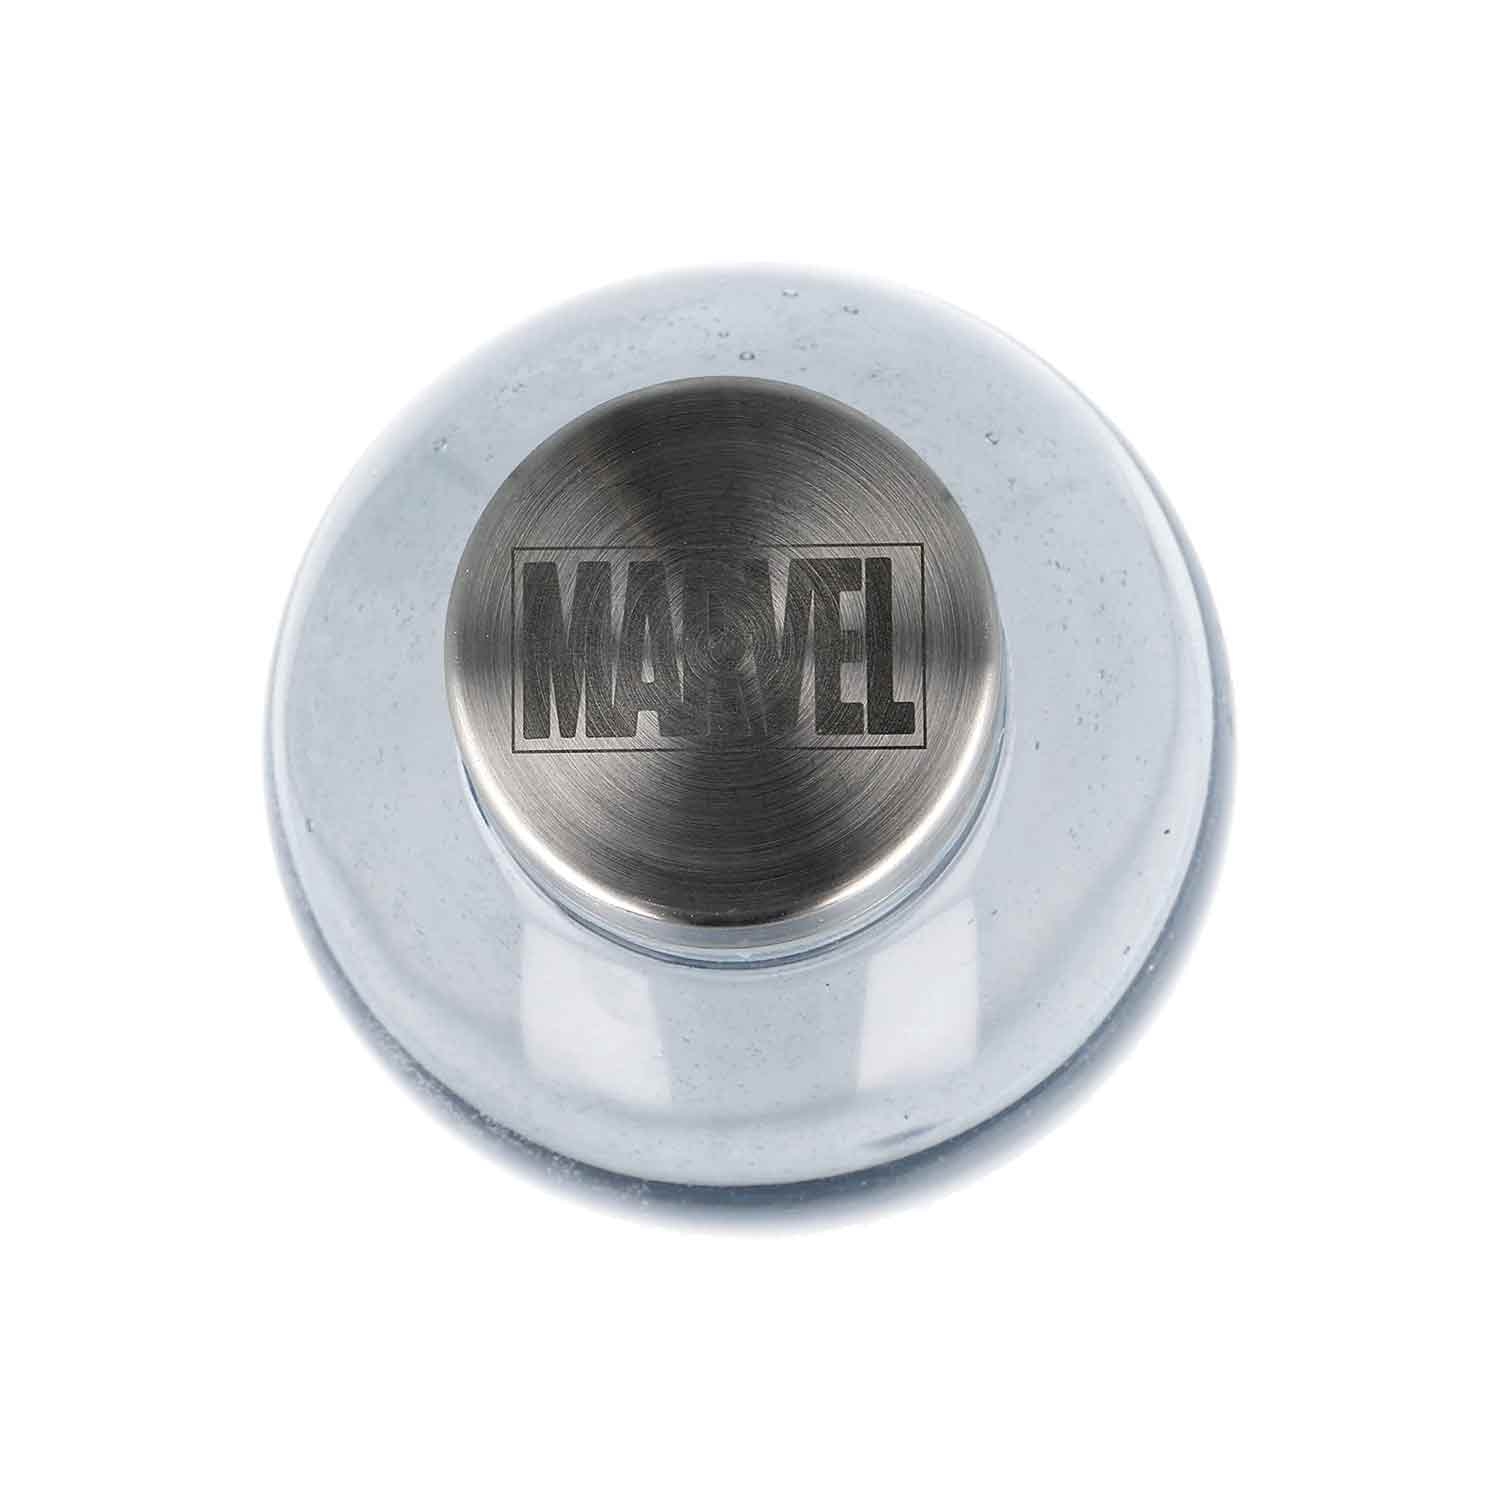 Marvel – Iron Man Glass Bottle 1030ml – Sunnygeeks